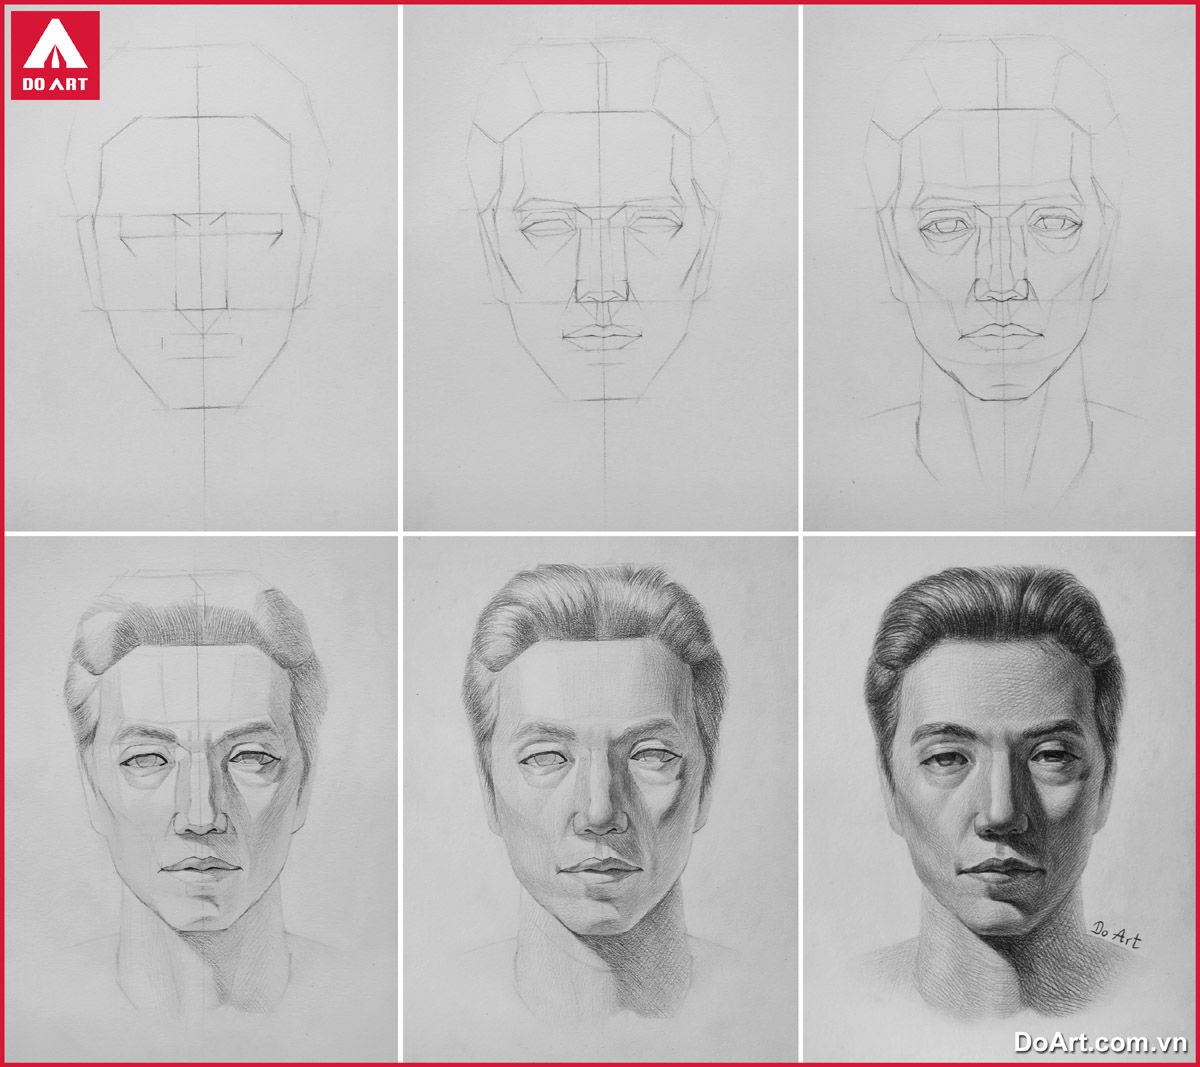 Kinh nghiệm vẽ chân dung chuẩn xác  Trung tâm luyện thi đại học khối V  khối H tại Hà Nội